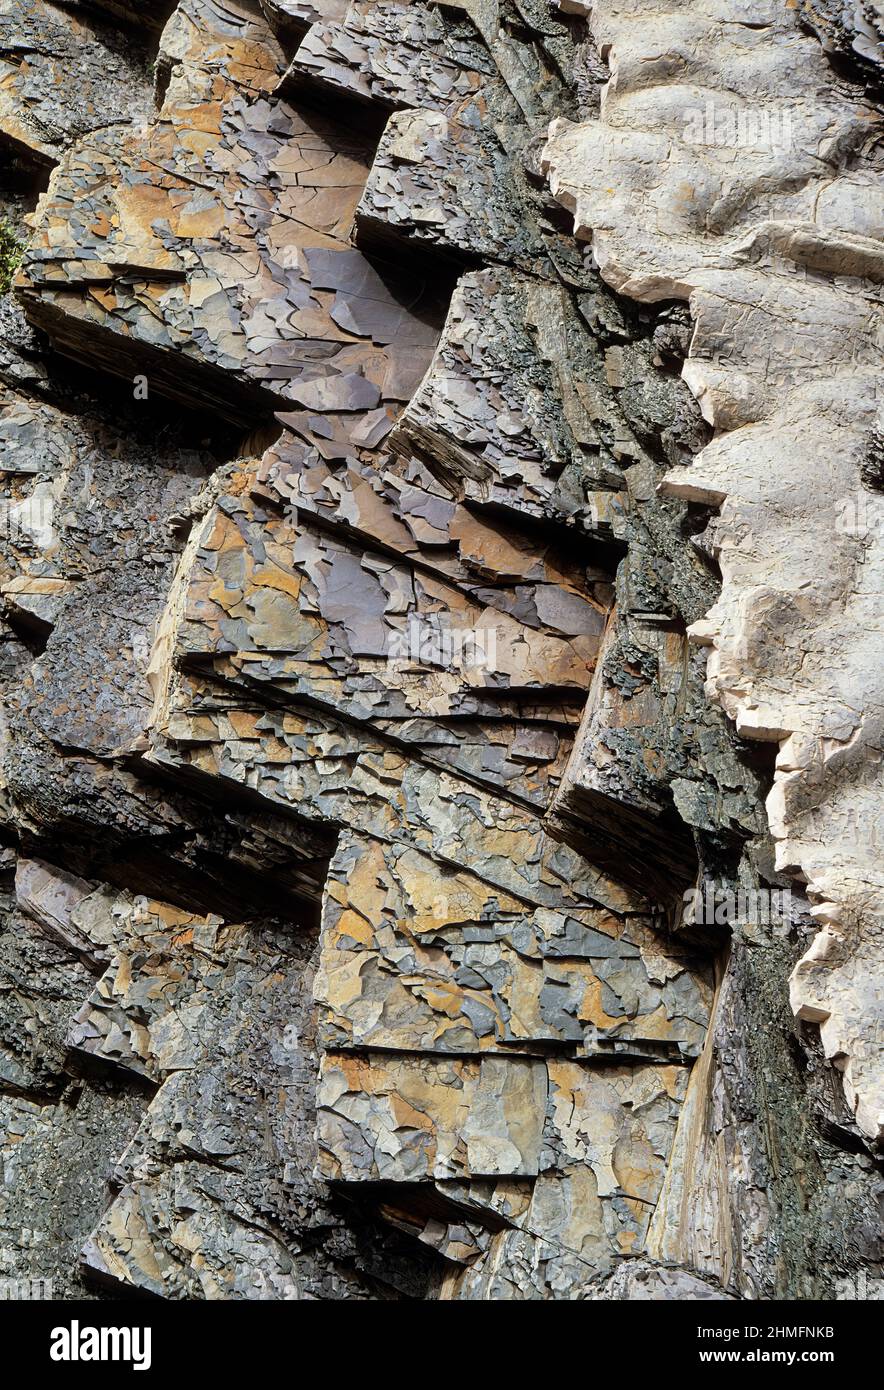 Les calcaires et les schistes superposés étaient de 115 degrés, vieux de 500 millions d'années, Green point, parc national du gros-Morne, Terre-Neuve, Canada. Banque D'Images